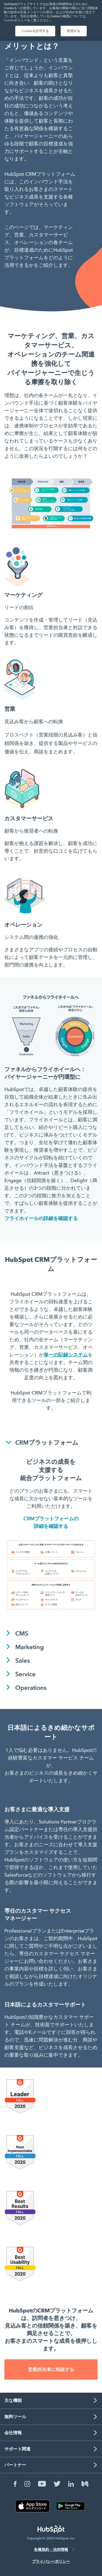 キャプチャ画面 会社名:HubSpot Japan株式会社プロジェクト名:Hubspot 画面名:アバウト・紹介 デバイス名:SPカテゴリ:WEB・インターネットタグ:SP,アバウト・紹介